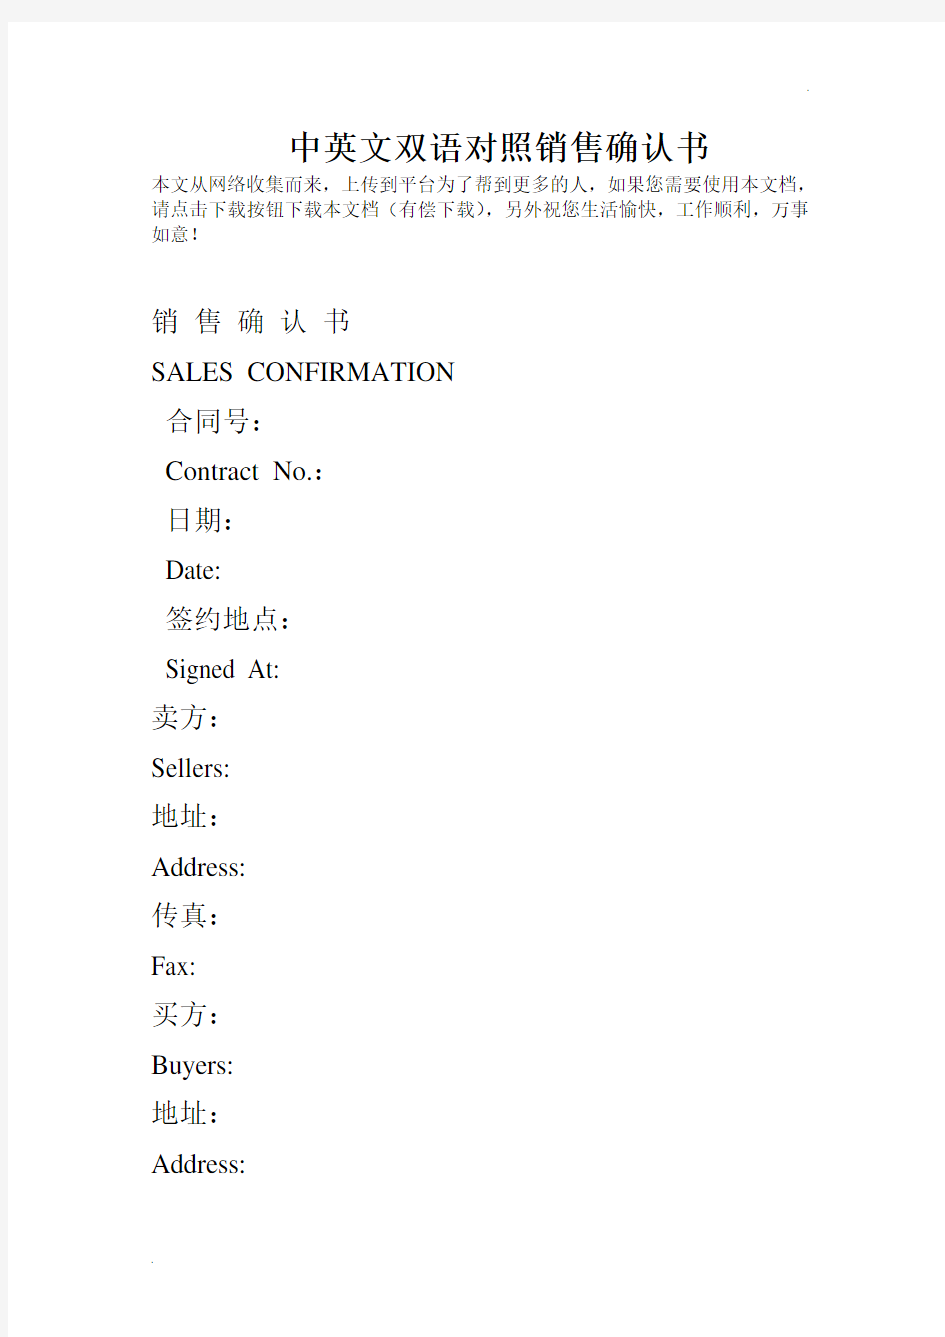 中英文双语对照销售确认书